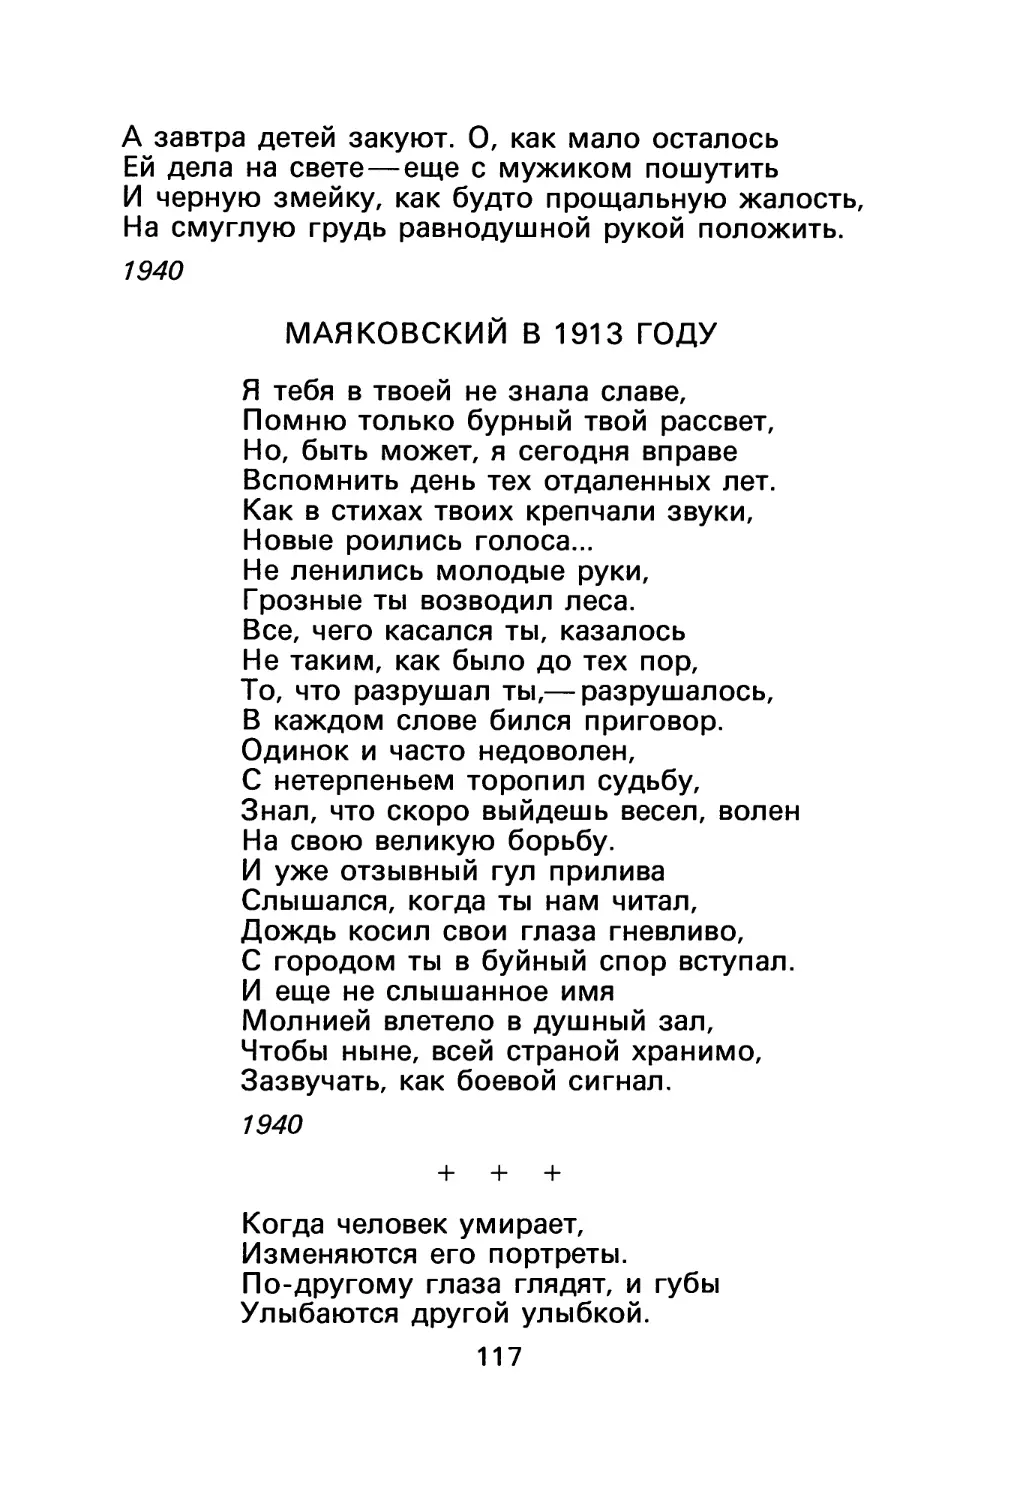 Маяковский в 1913 году
«Когда человек умирает...»